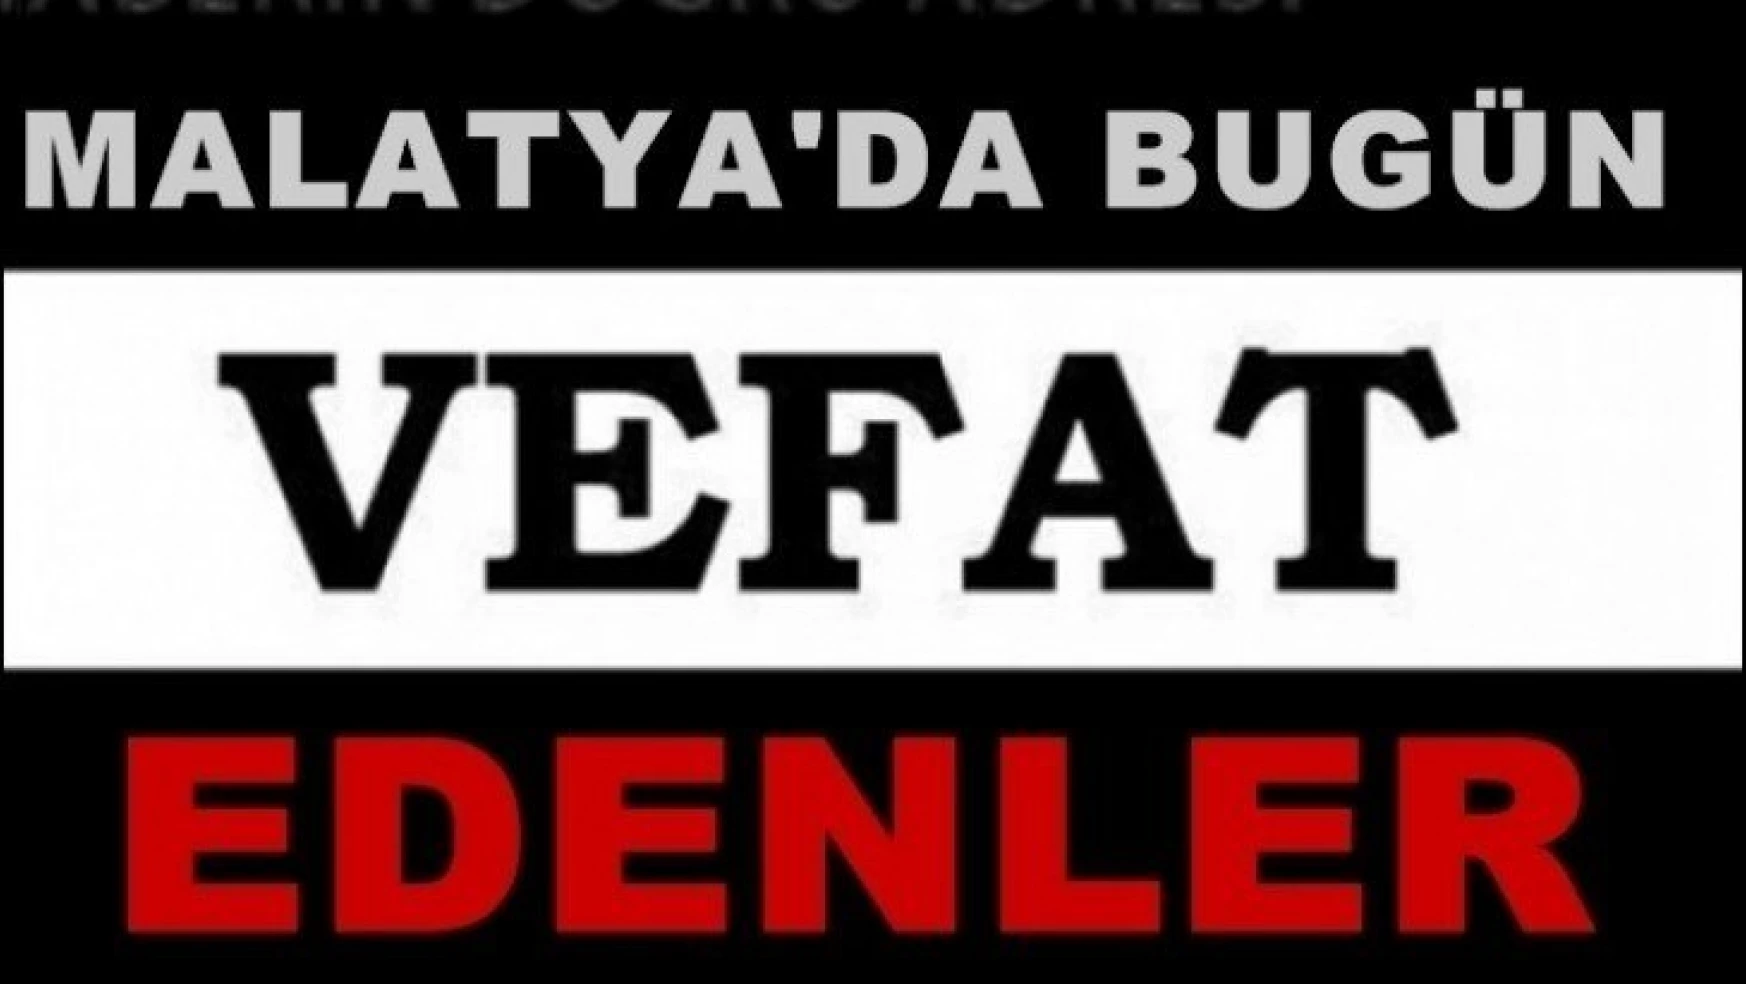 Malatya'da Bugün 8 Kişi Vefat Etti